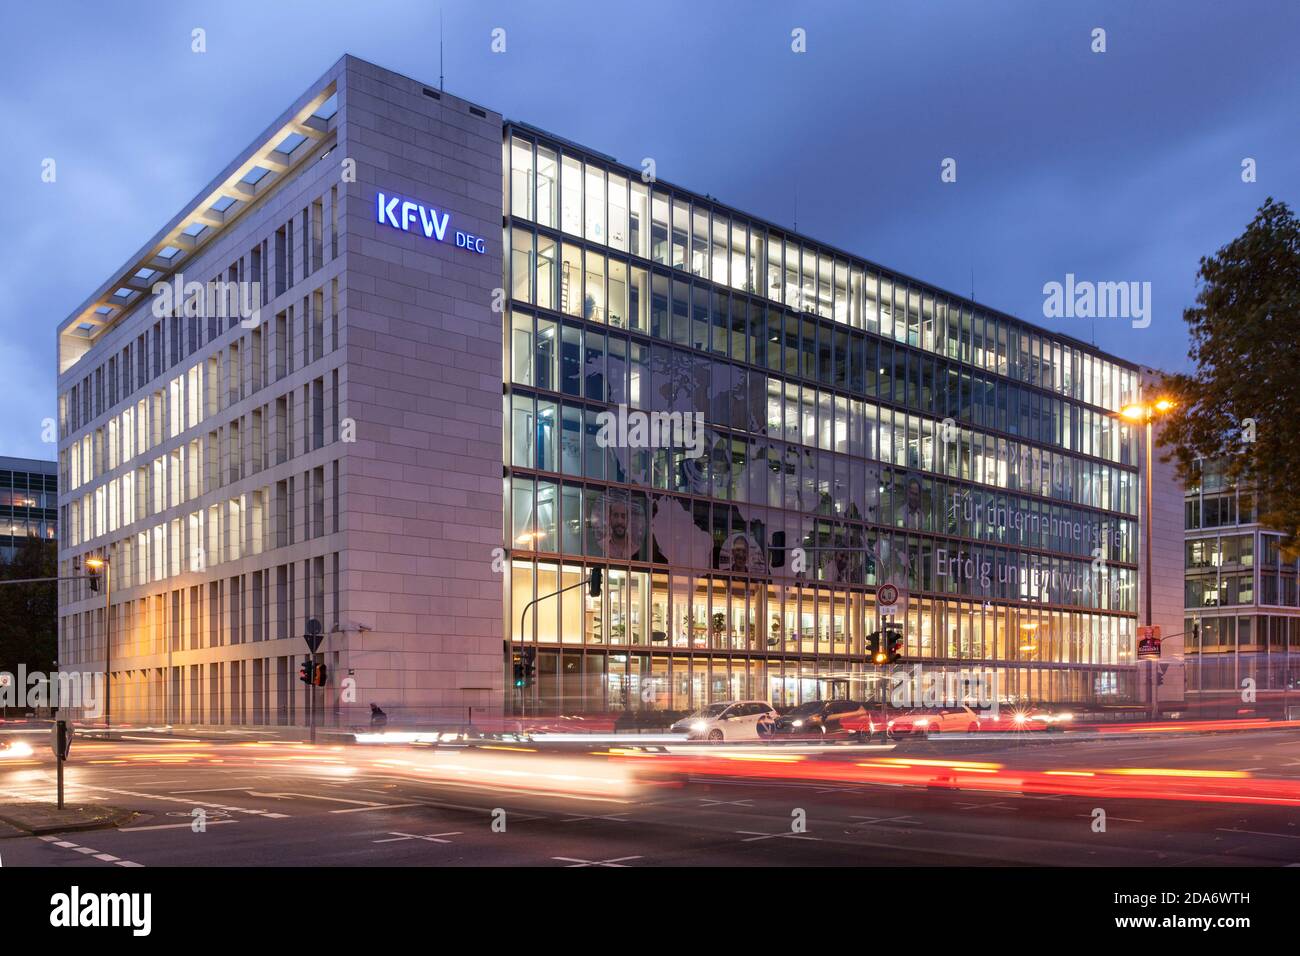 headquarters of the  KFW DEG - Deutsche Investitions- und Entwicklungsgesellschaft mbH  (German Investment and Development Corporation), Cologne, Germ Stock Photo